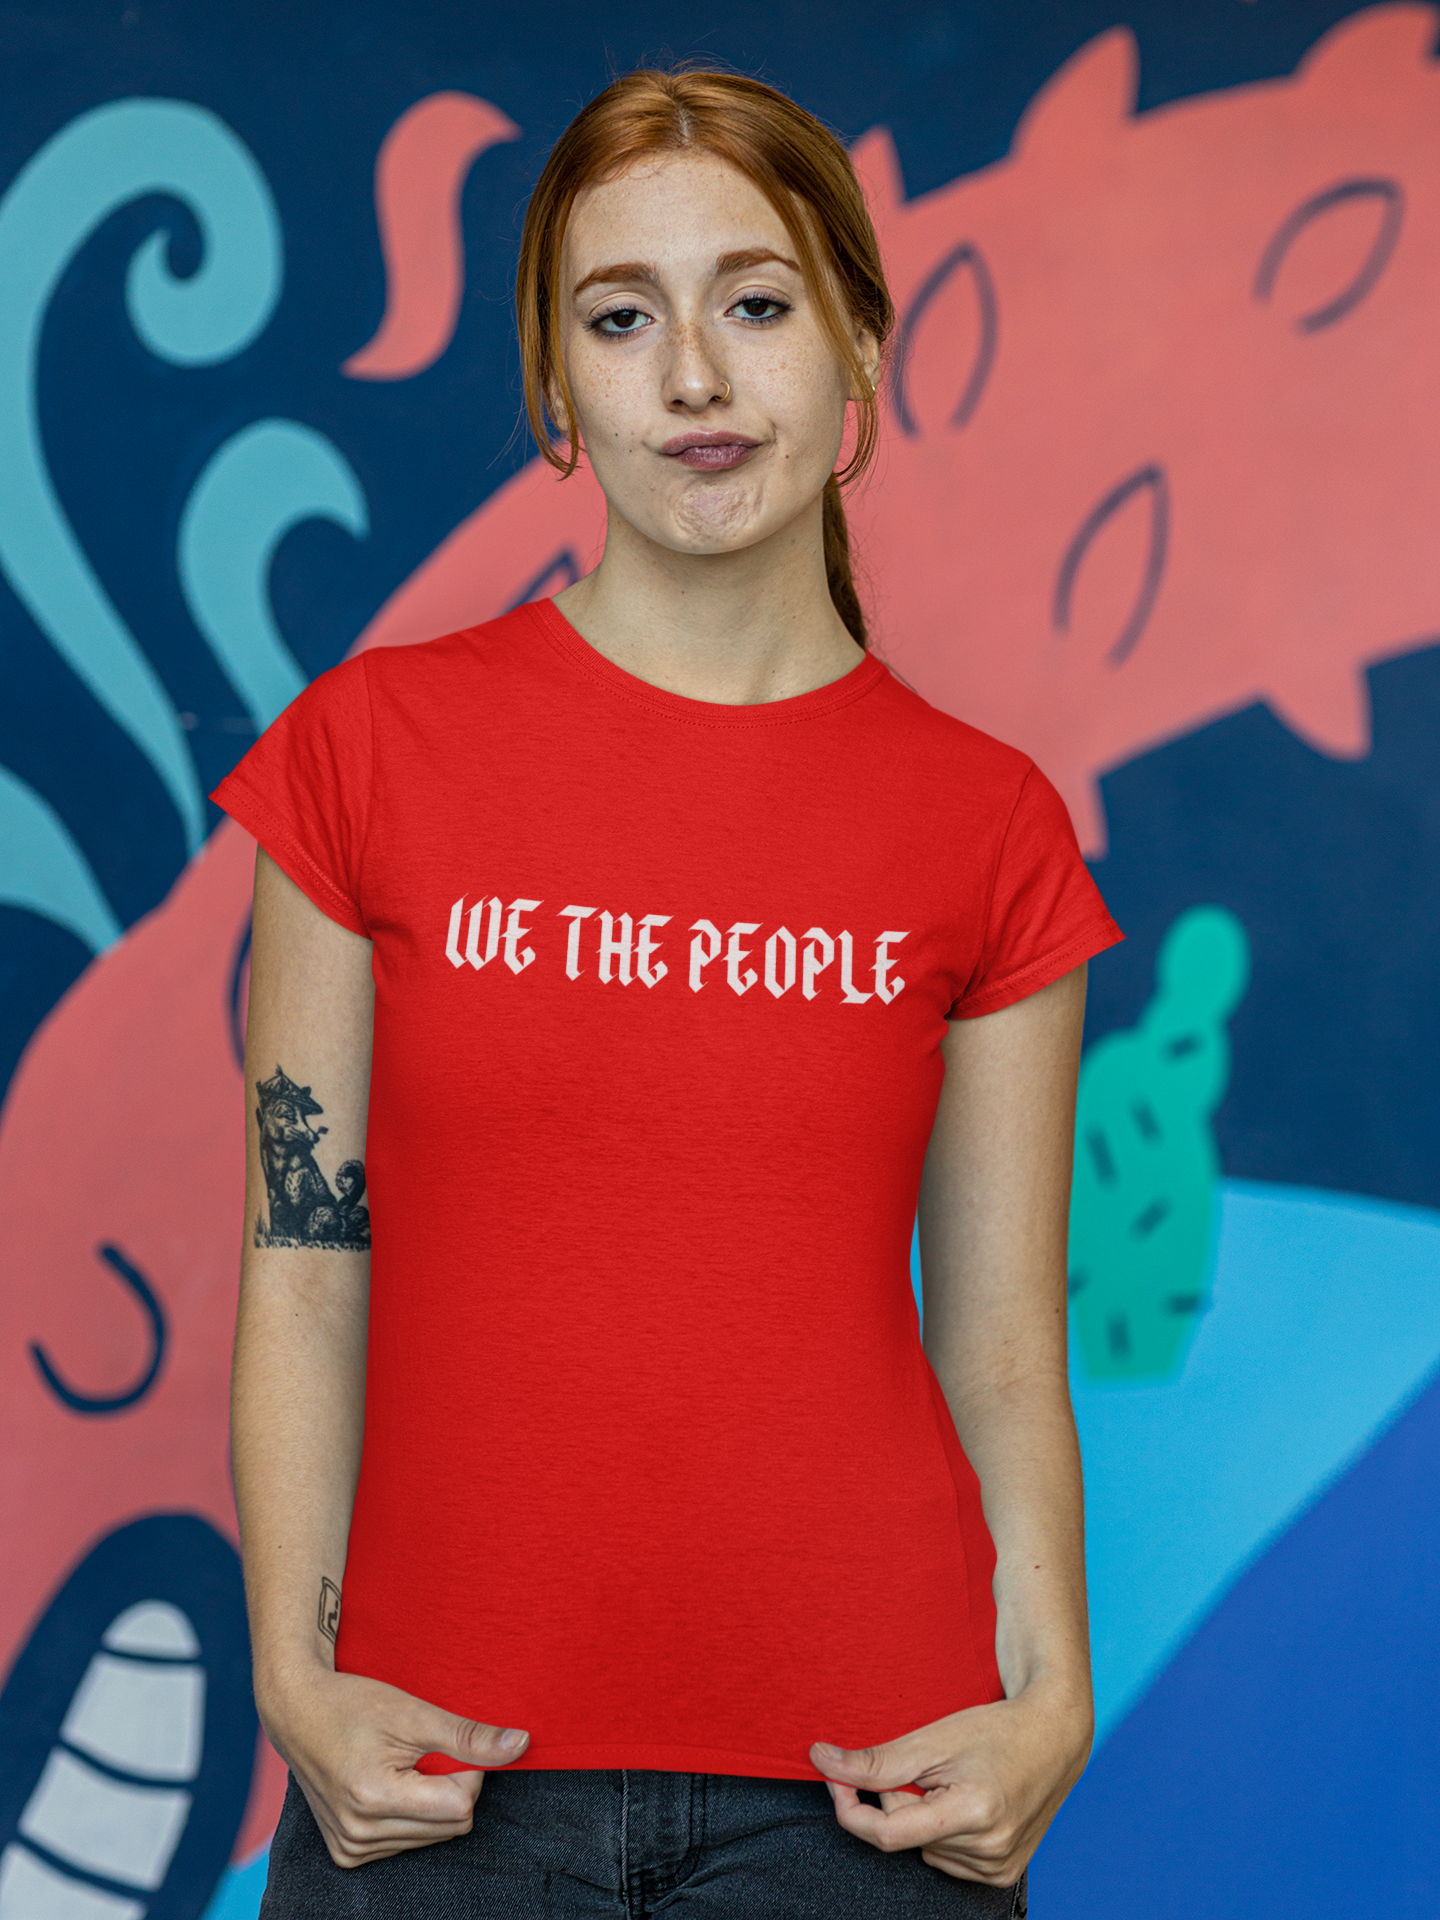 We The People T-Shirt Dam i otroligt många härliga färger, We The People för den lilla människans rätt